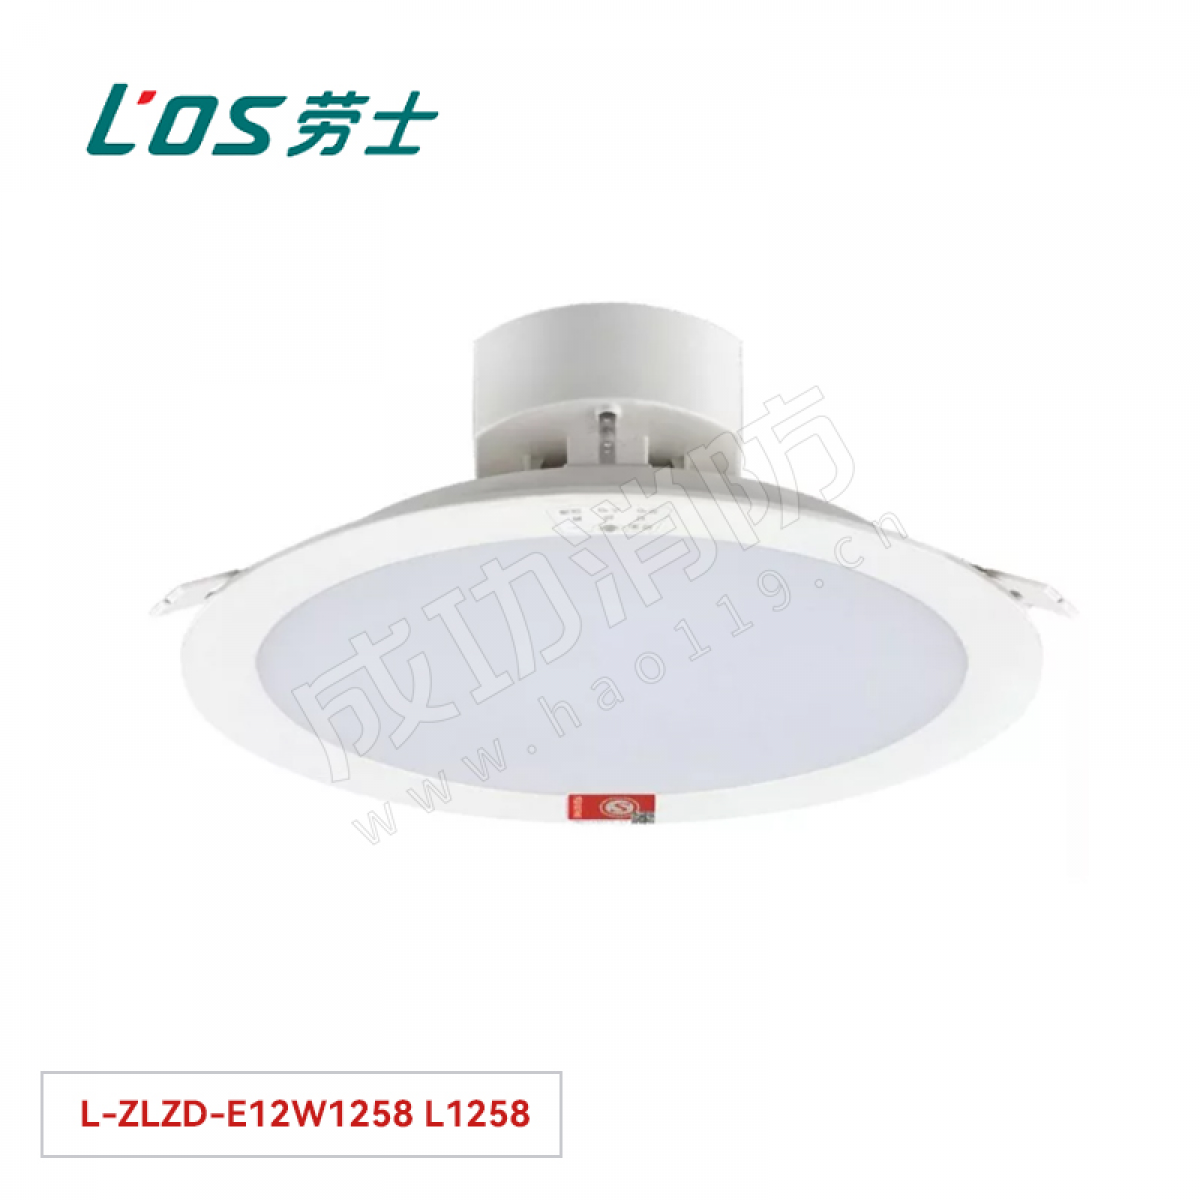 劳士 消防应急照明灯(嵌顶安装) L-ZLZD-E12W1258 L1258